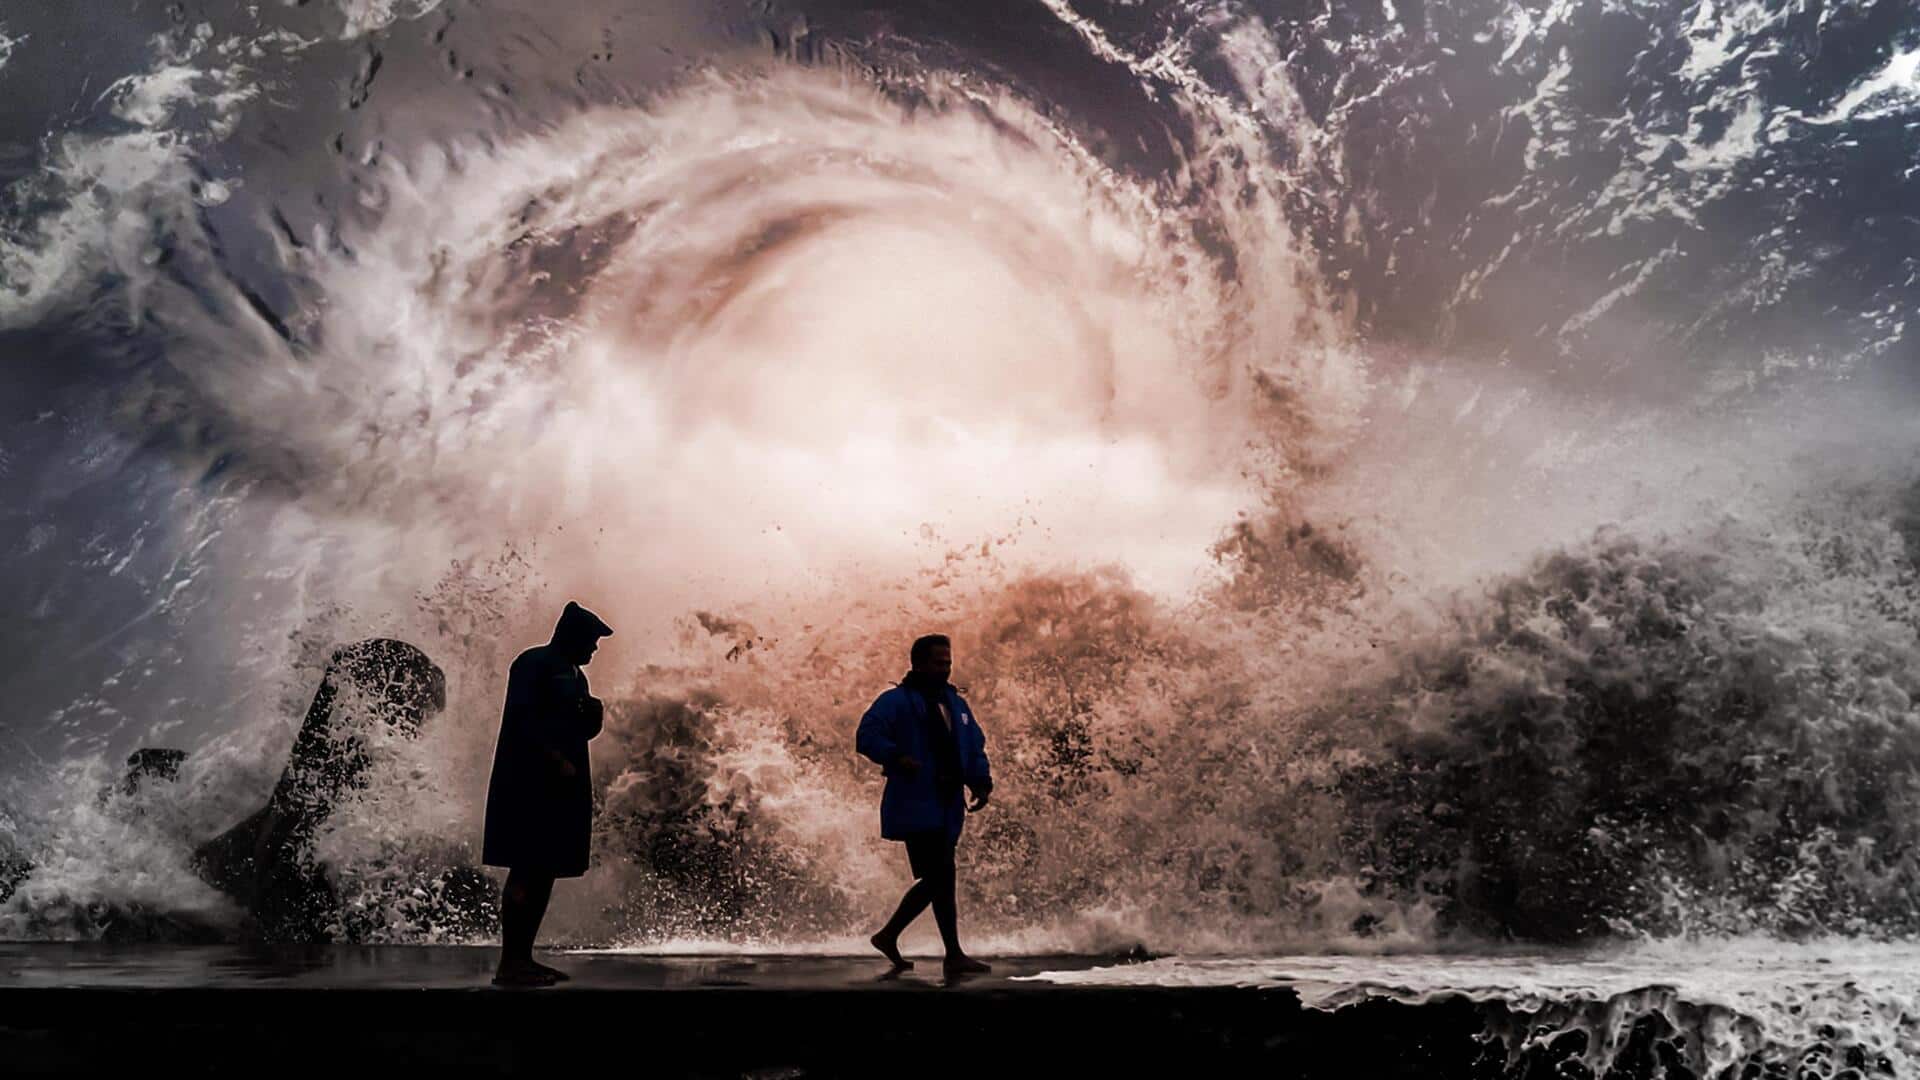 एक साथ उठे 2 तूफान; अरब सागर में 'तेज', बंगाल की खाड़ी में 'हामून' का खतरा